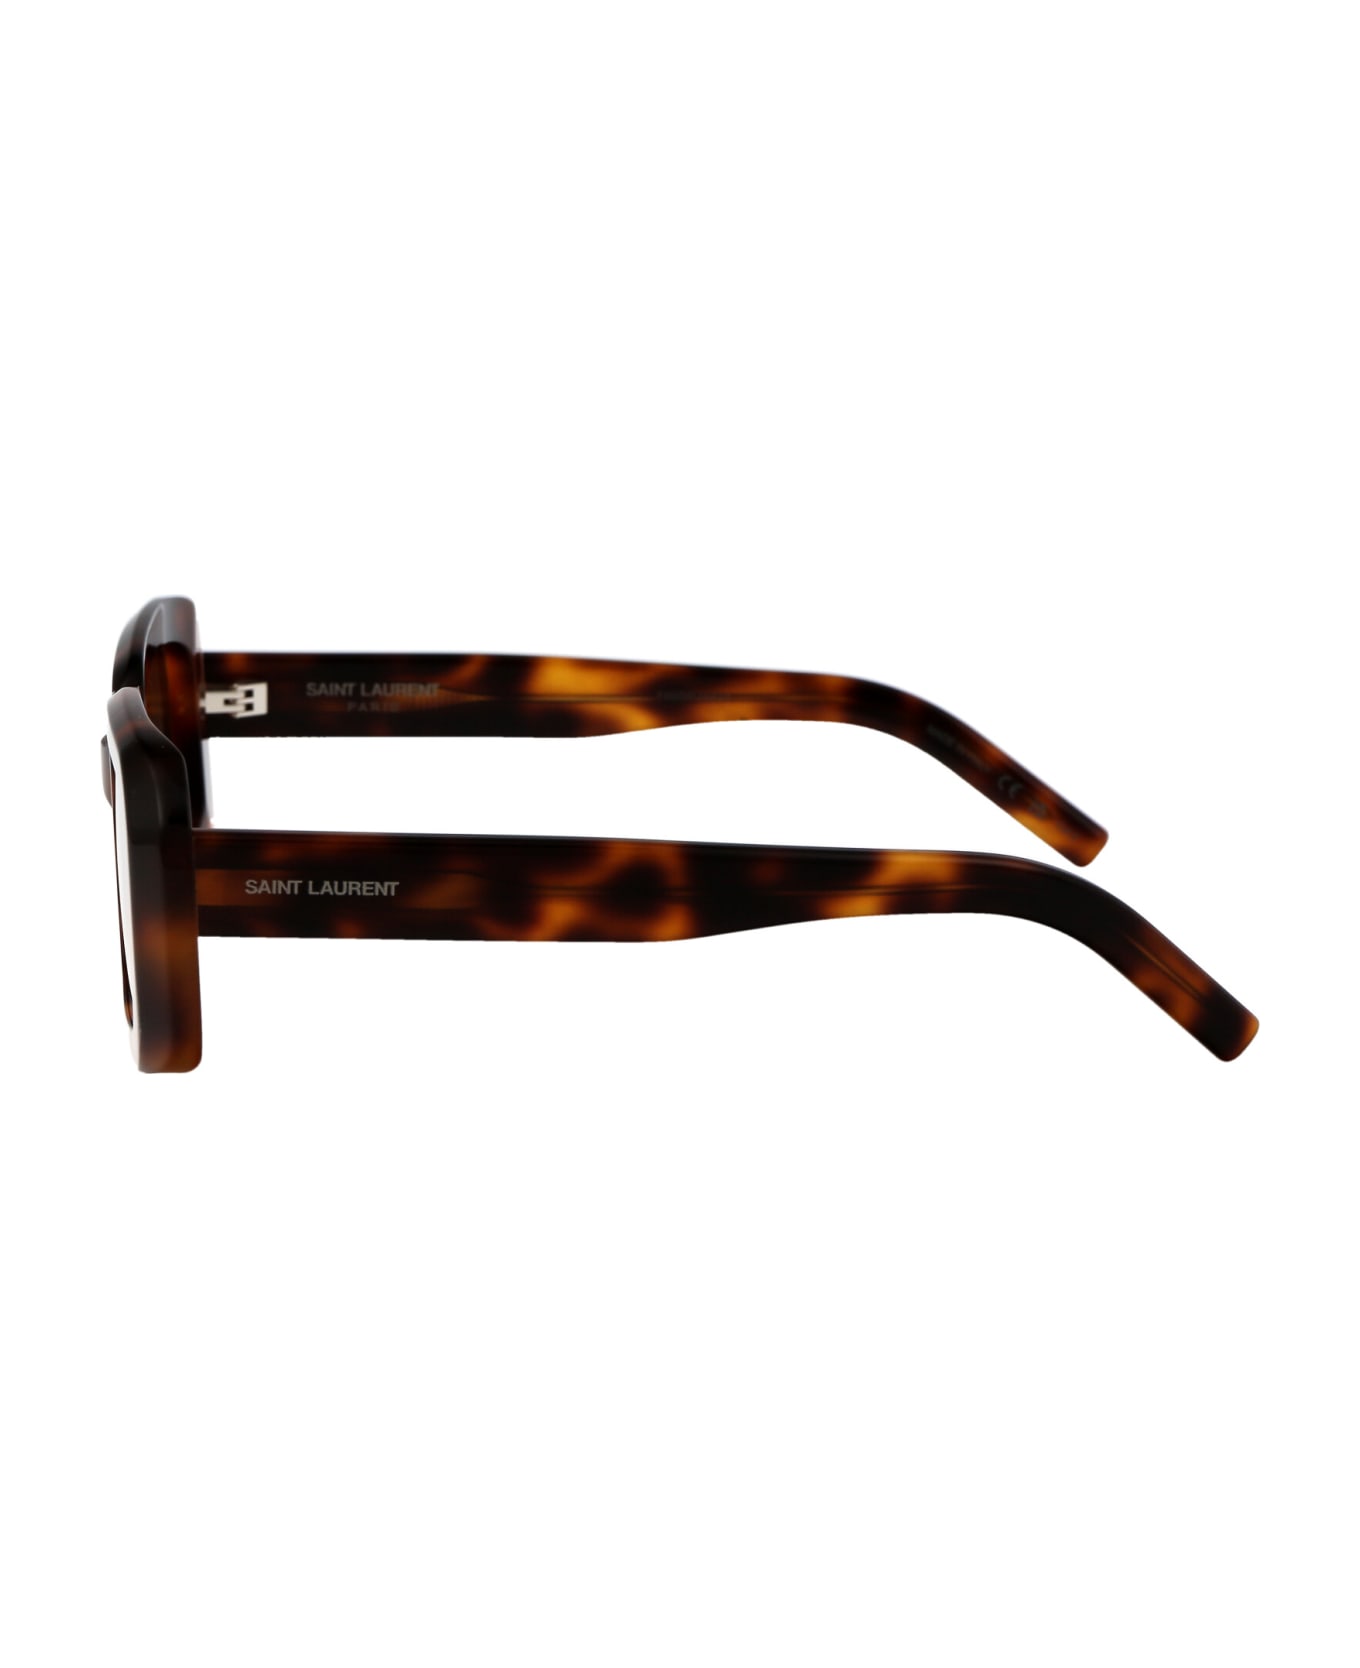 Saint Laurent Eyewear Sl 534 Sunrise Sunglasses - 012 HAVANA HAVANA BROWN